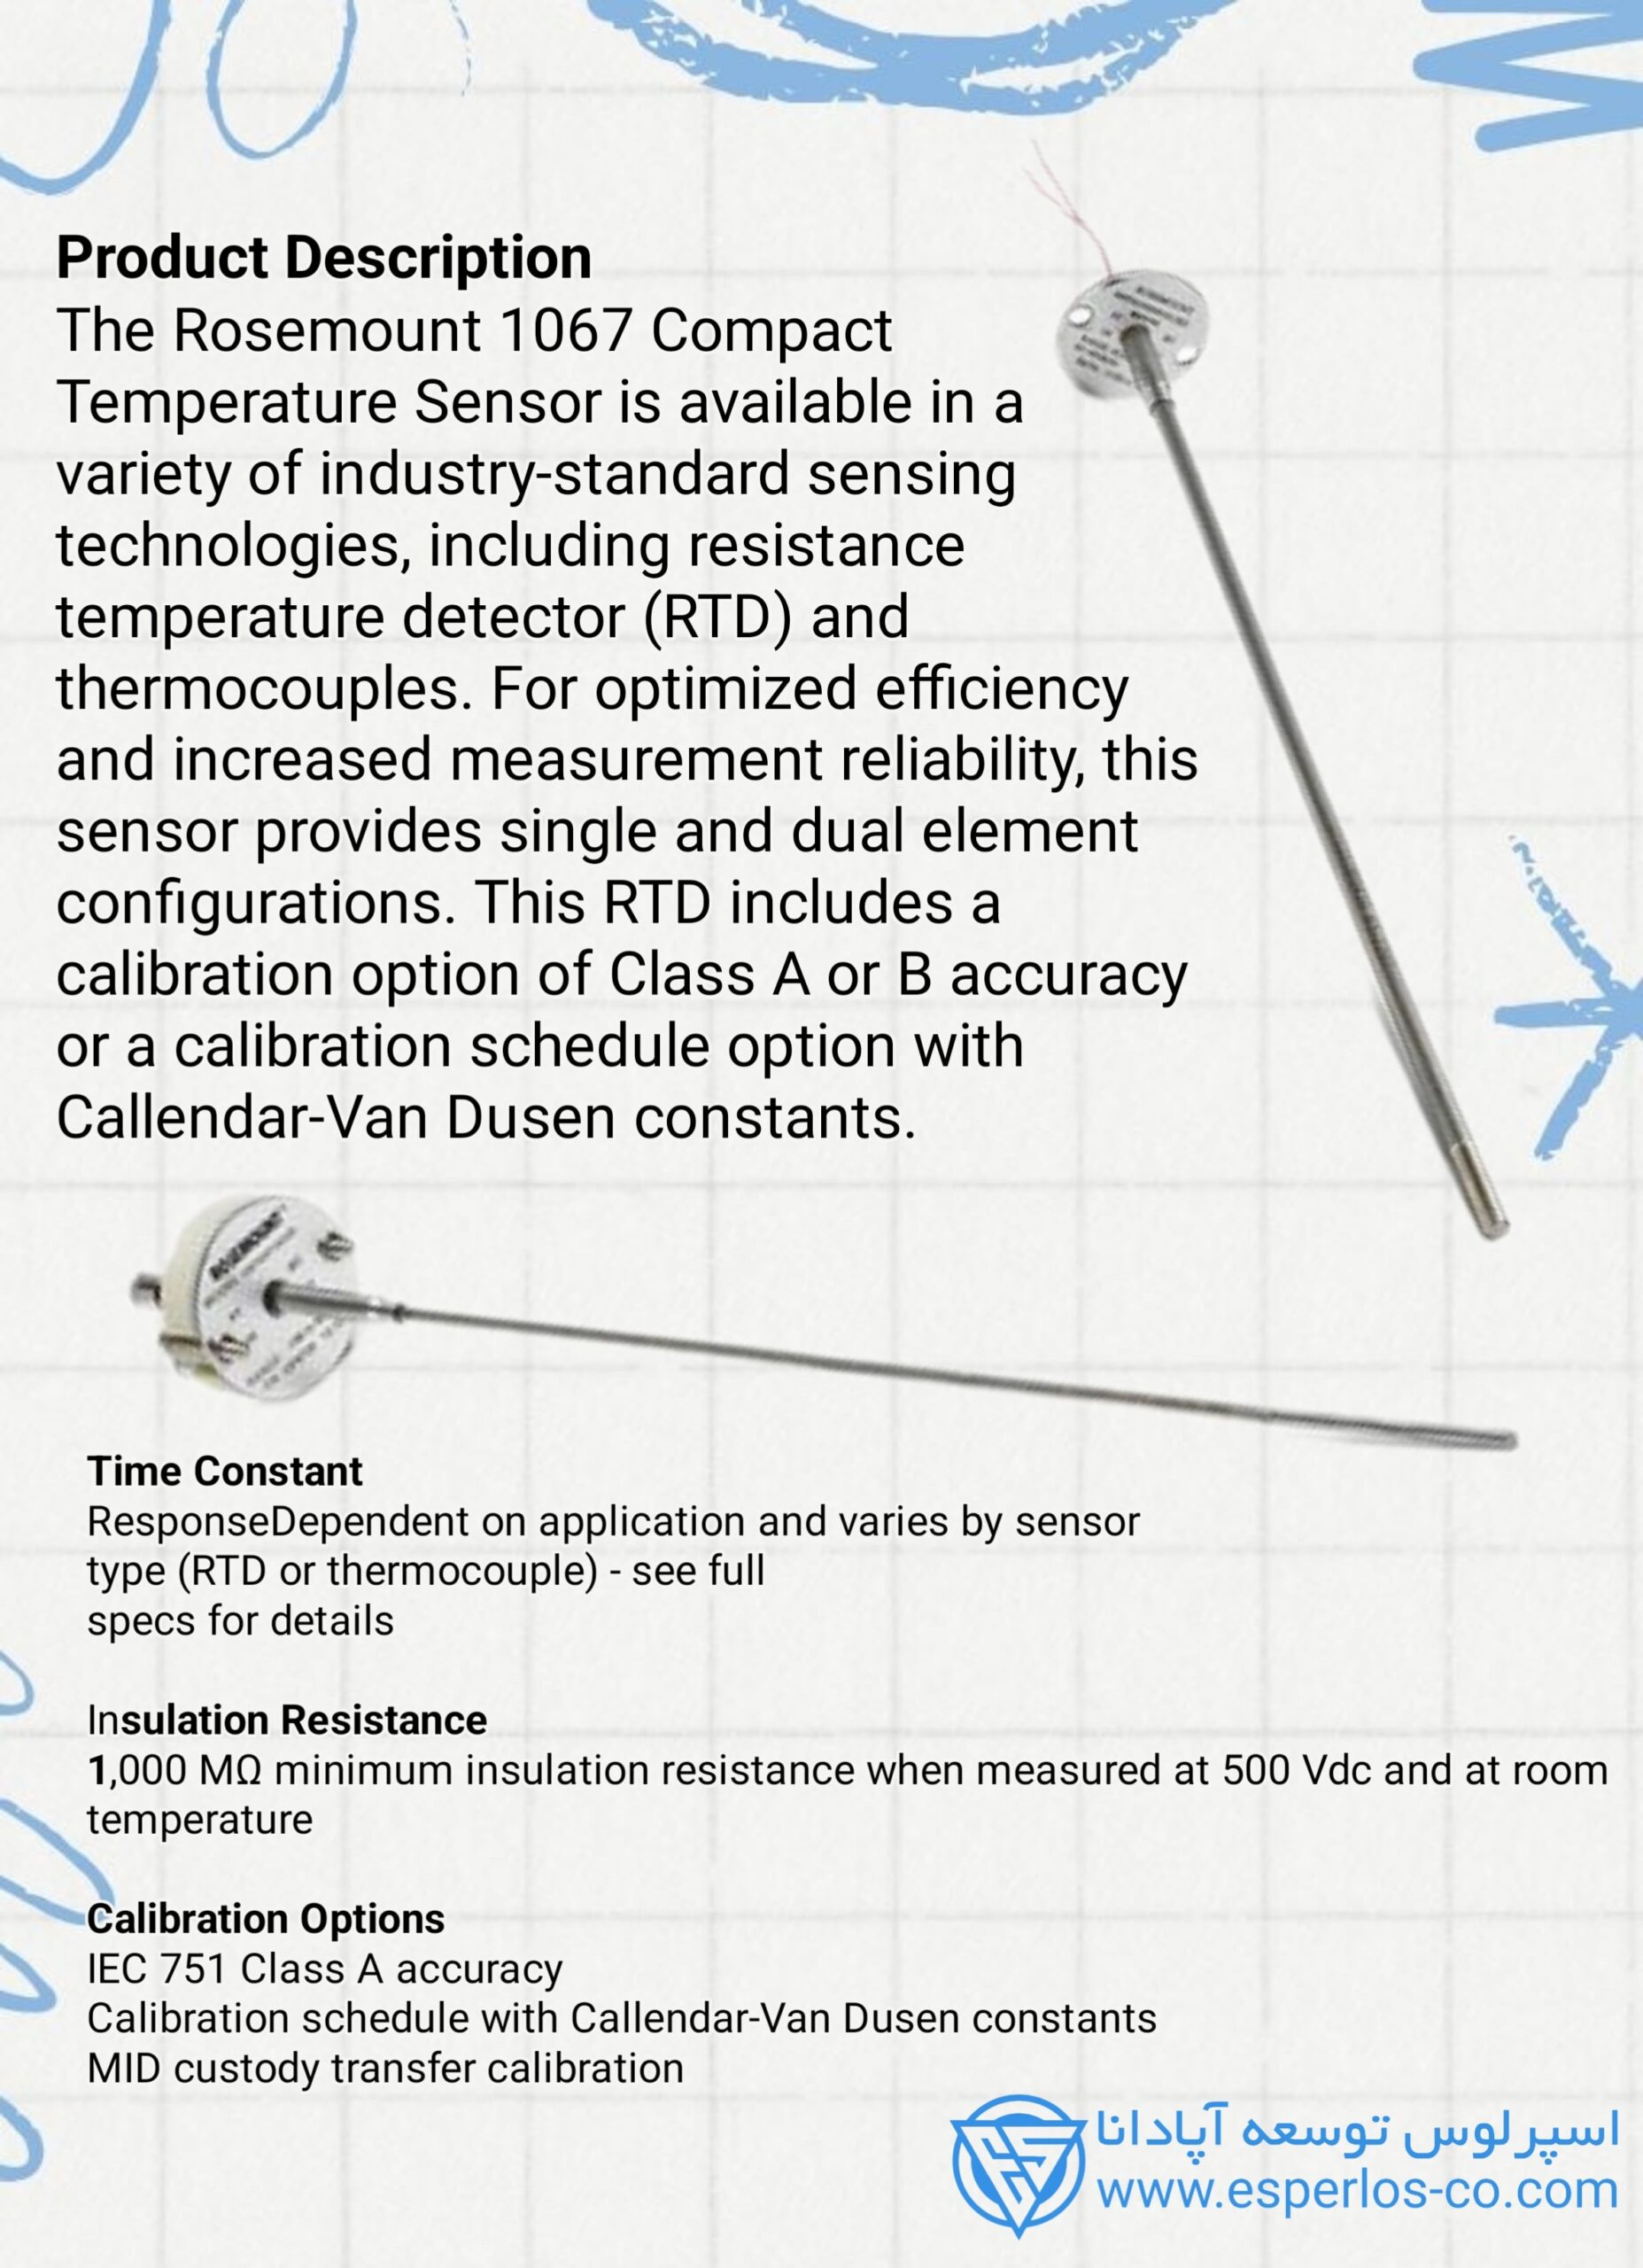 مشخصات فنی سنسور RTD 1067 روزمونت